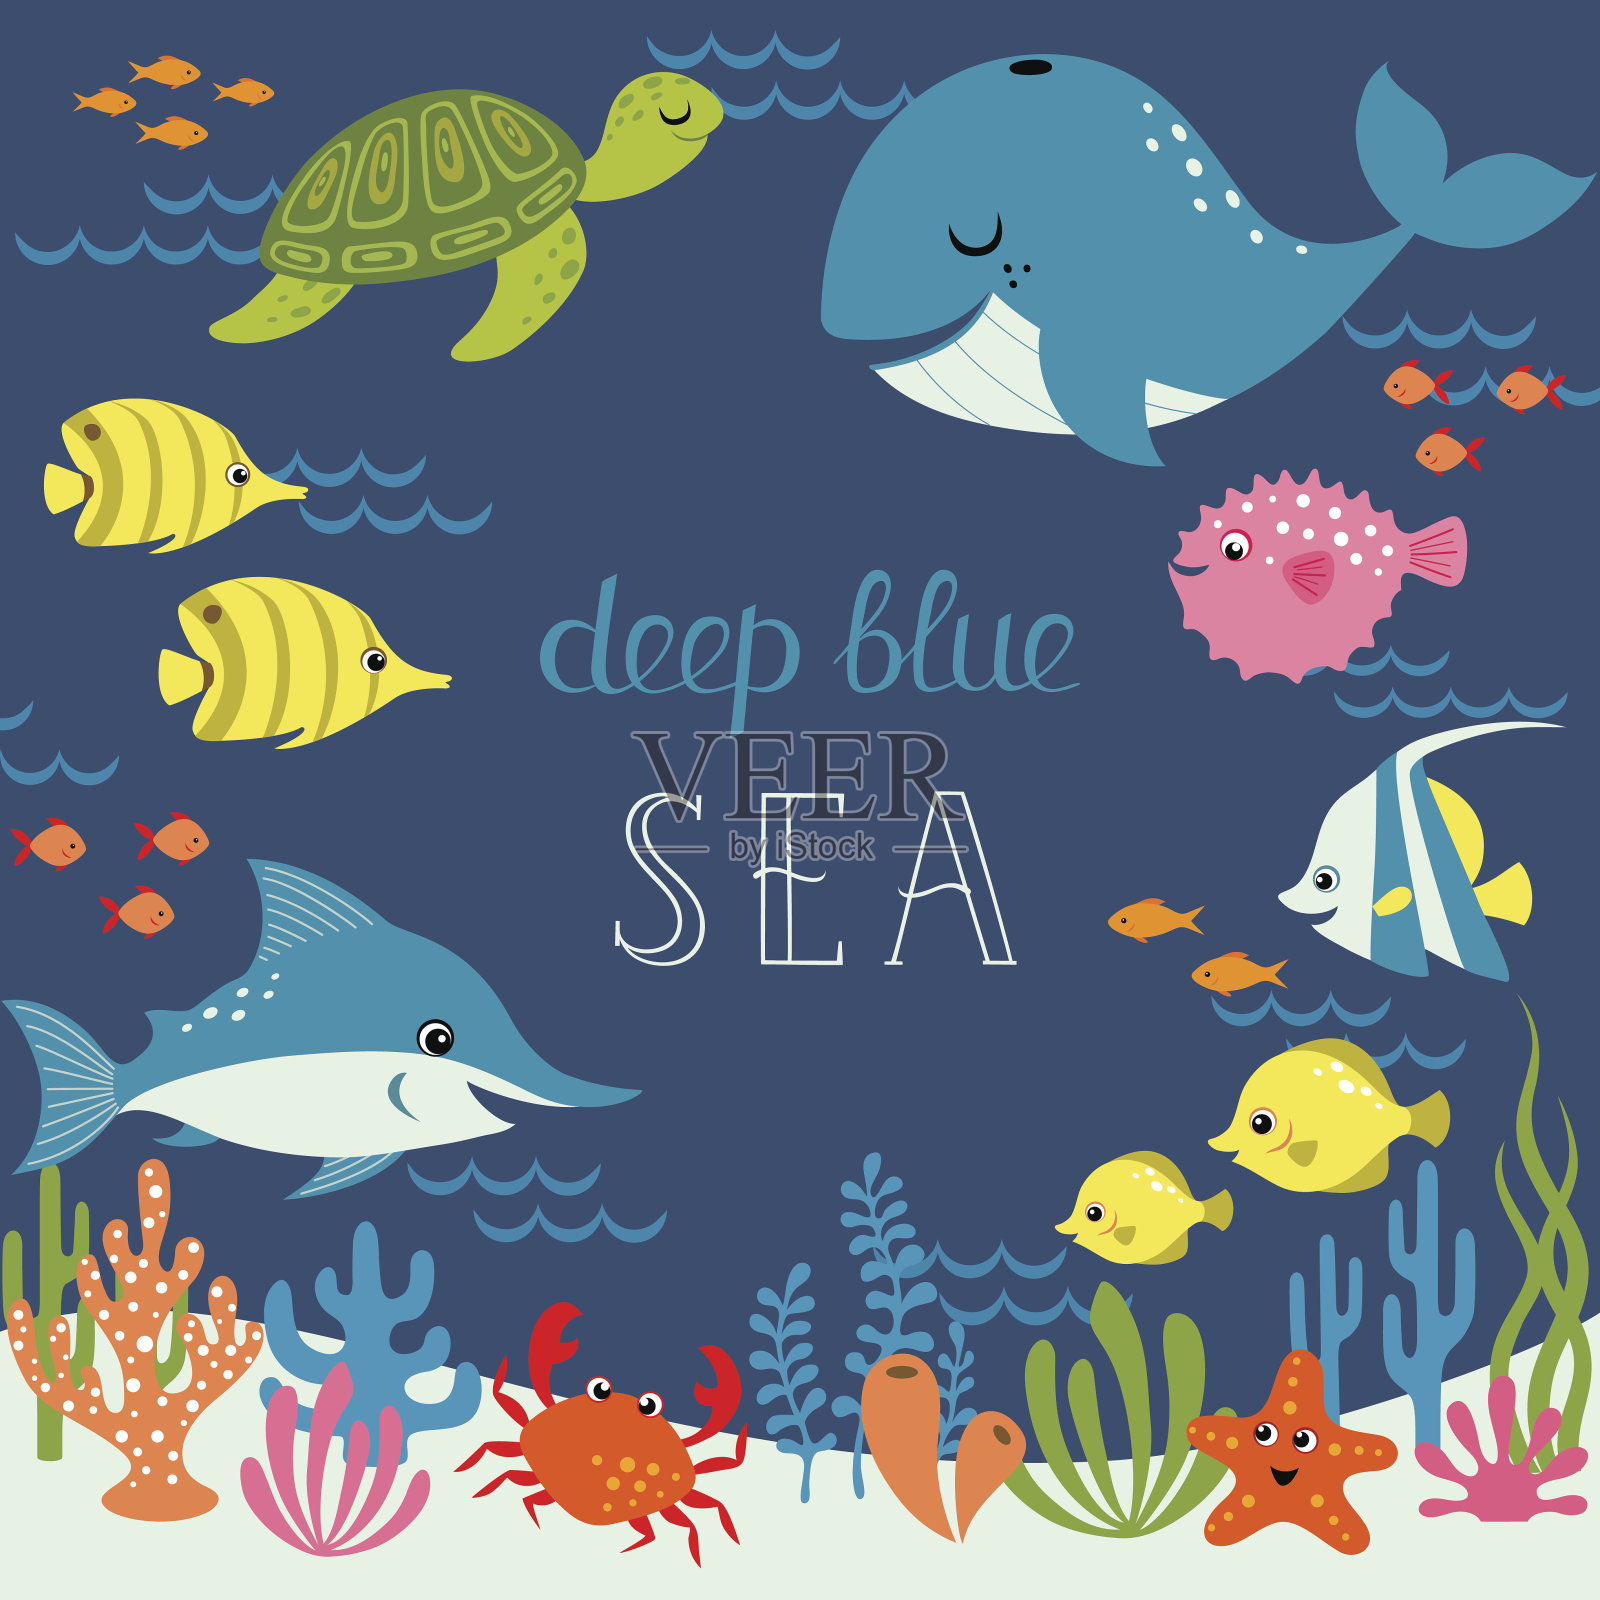 可爱的深蓝色大海插画图片素材